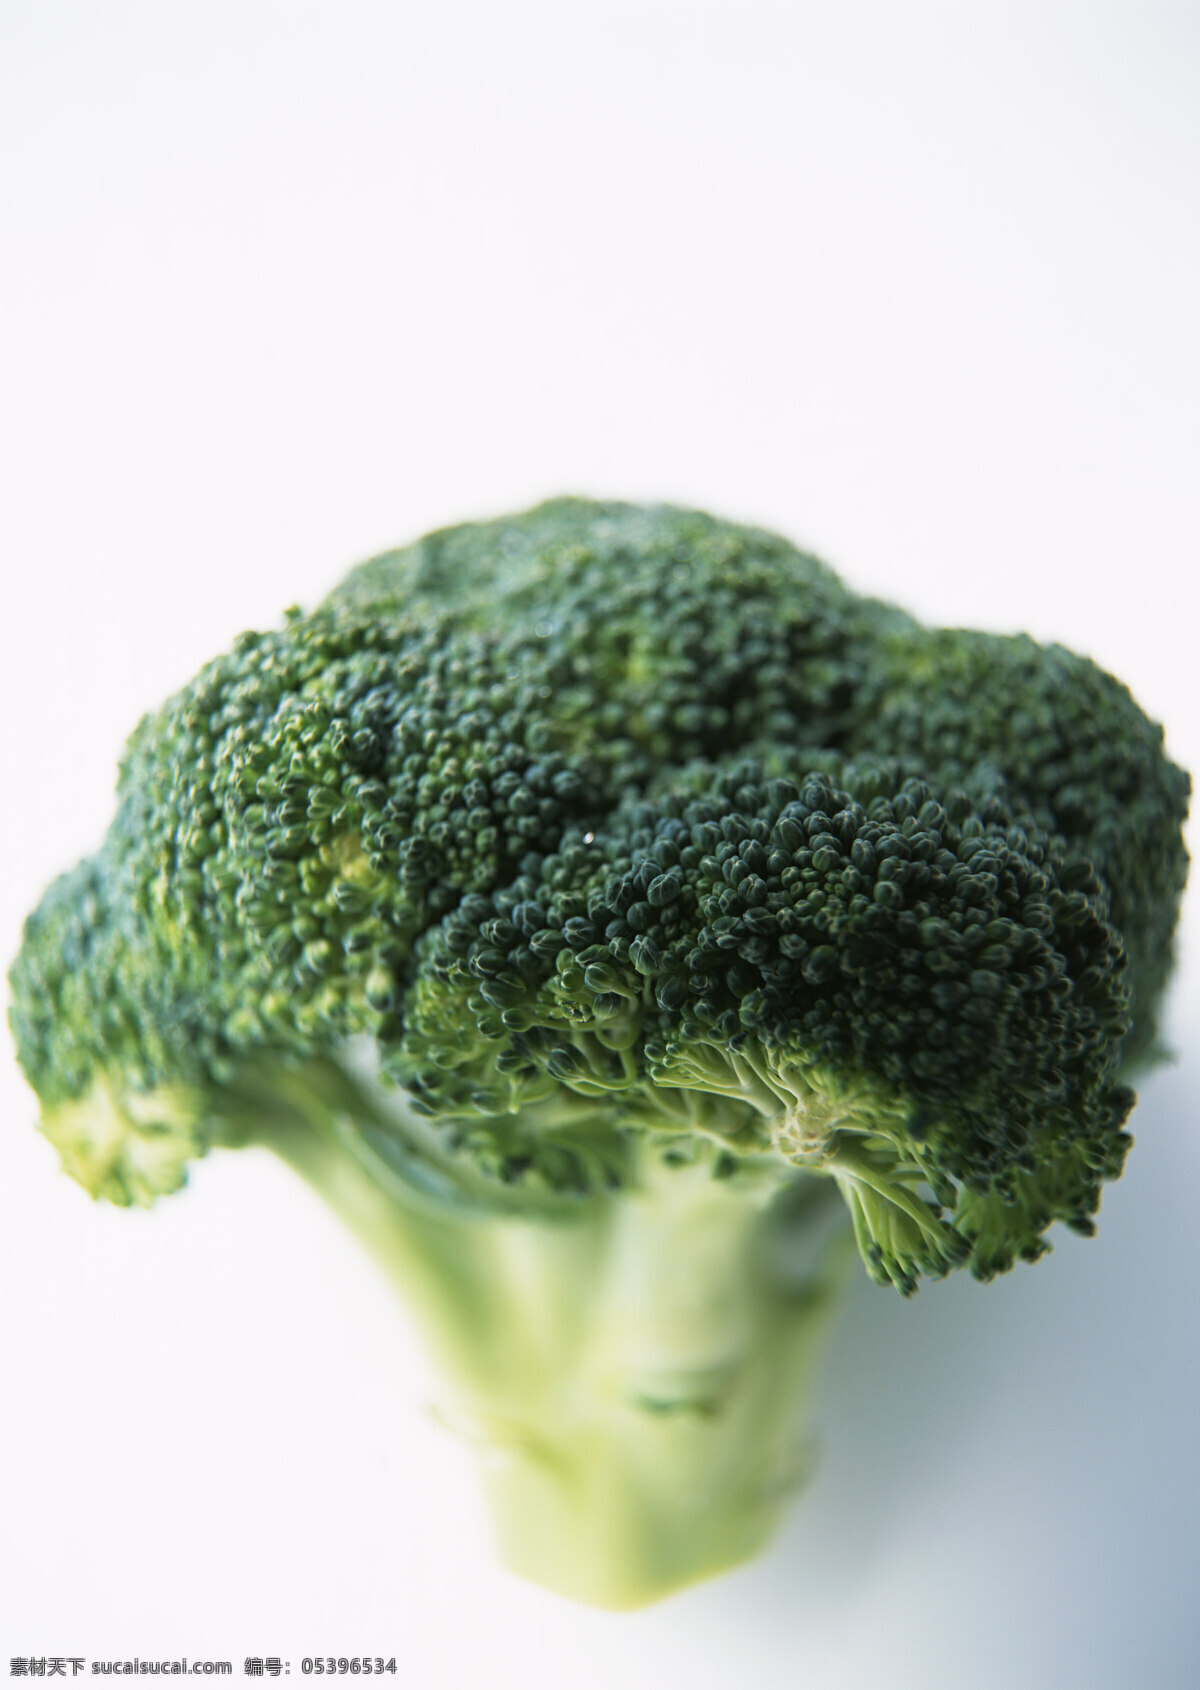 西兰花 新鲜蔬菜 花菜 农作物 绿色食品 摄影图 高清图片 蔬菜图片 餐饮美食